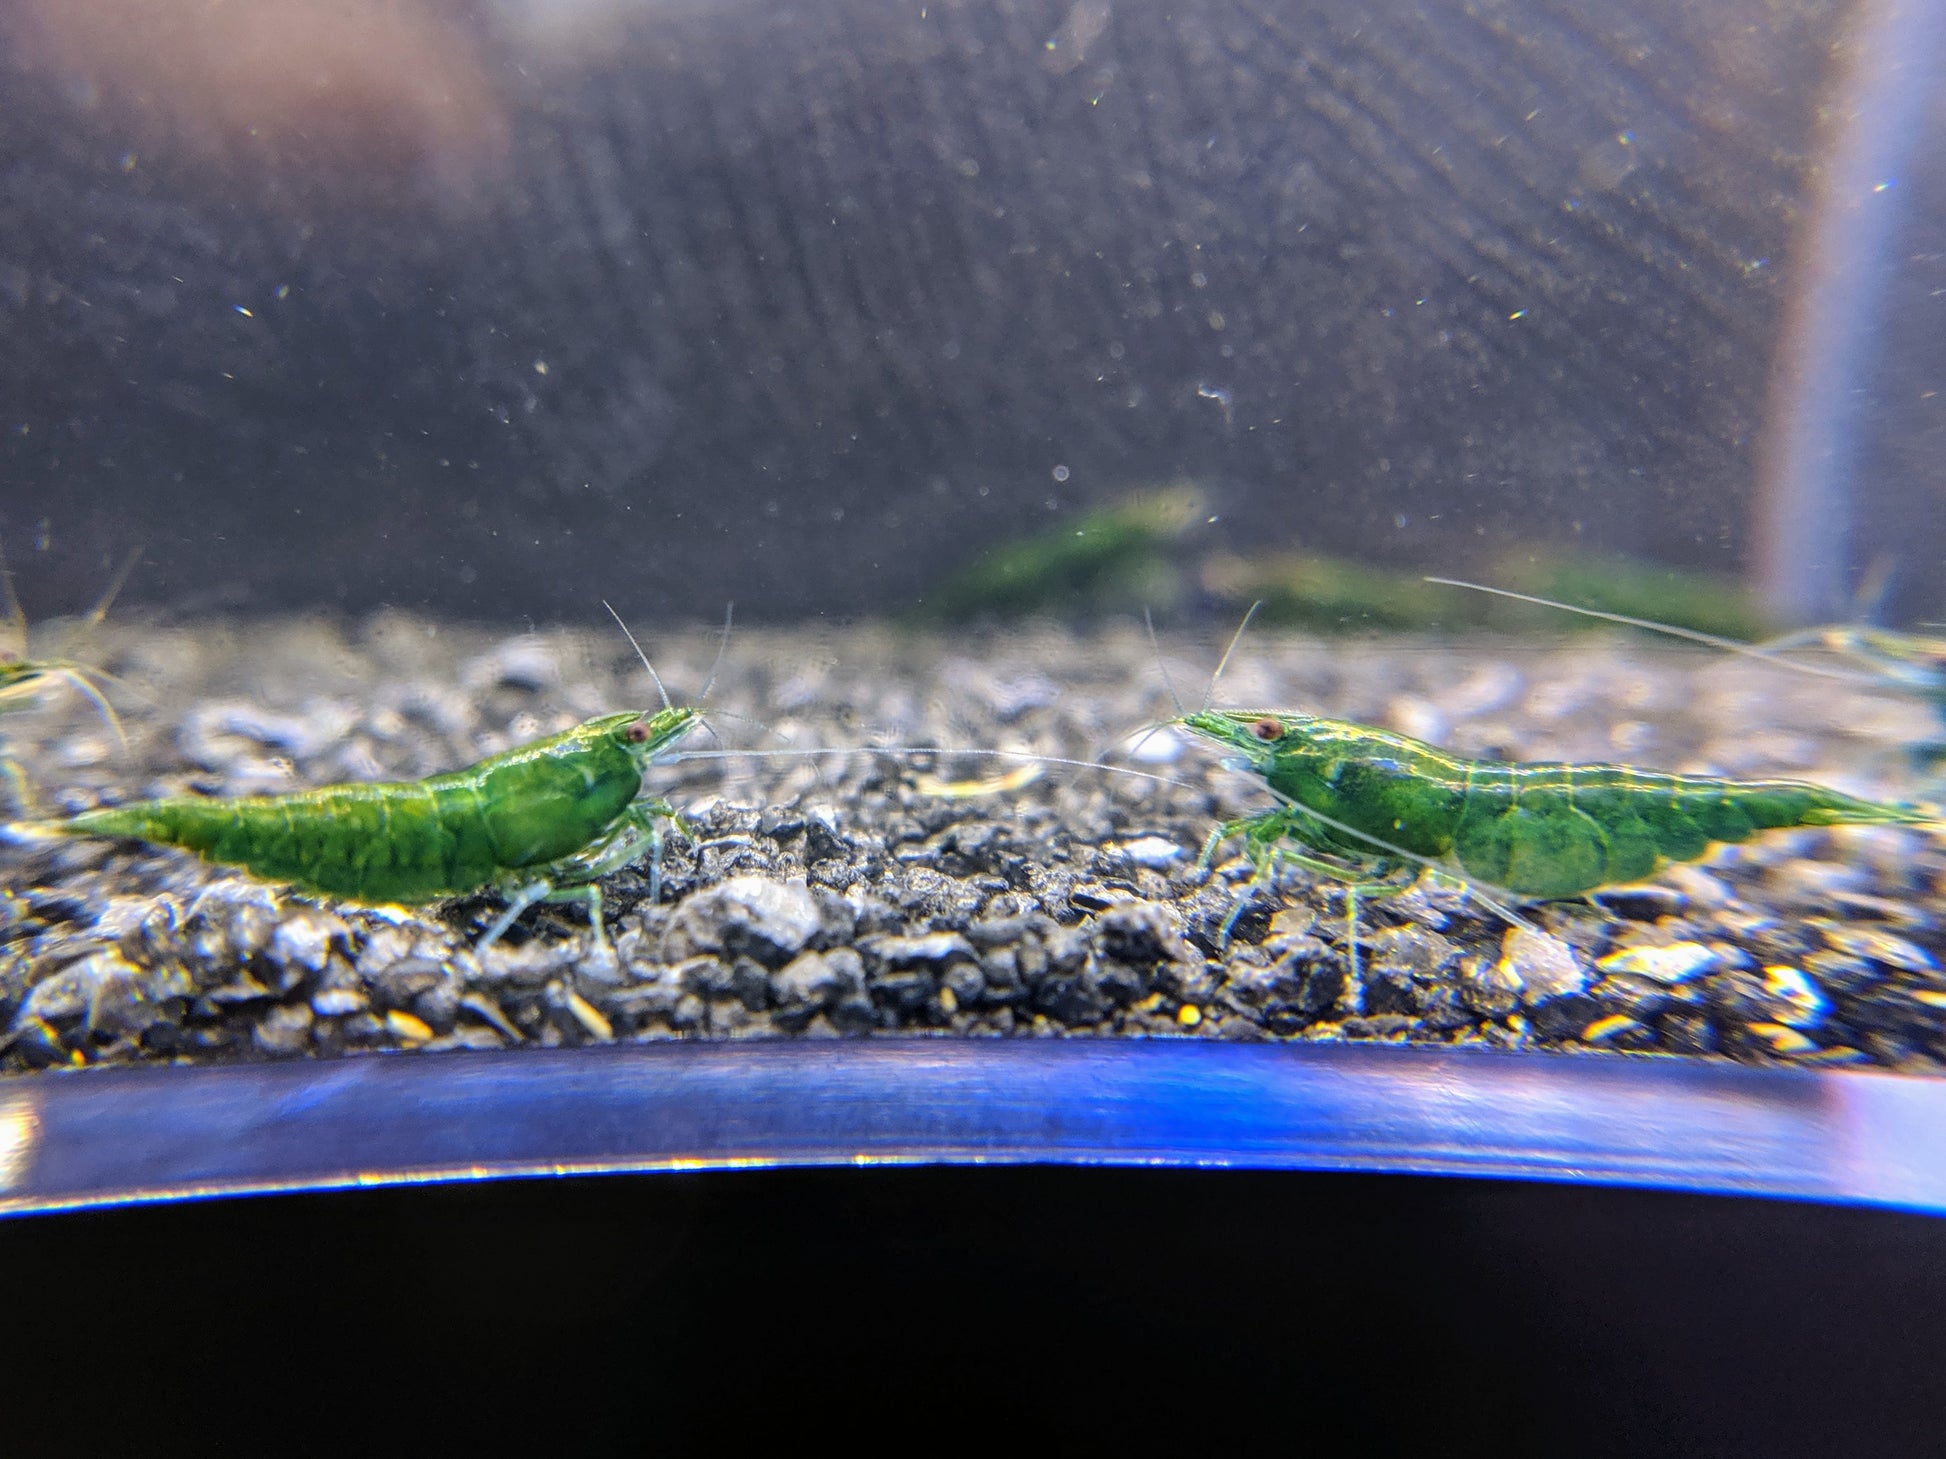 Green jade shrimp for sale.